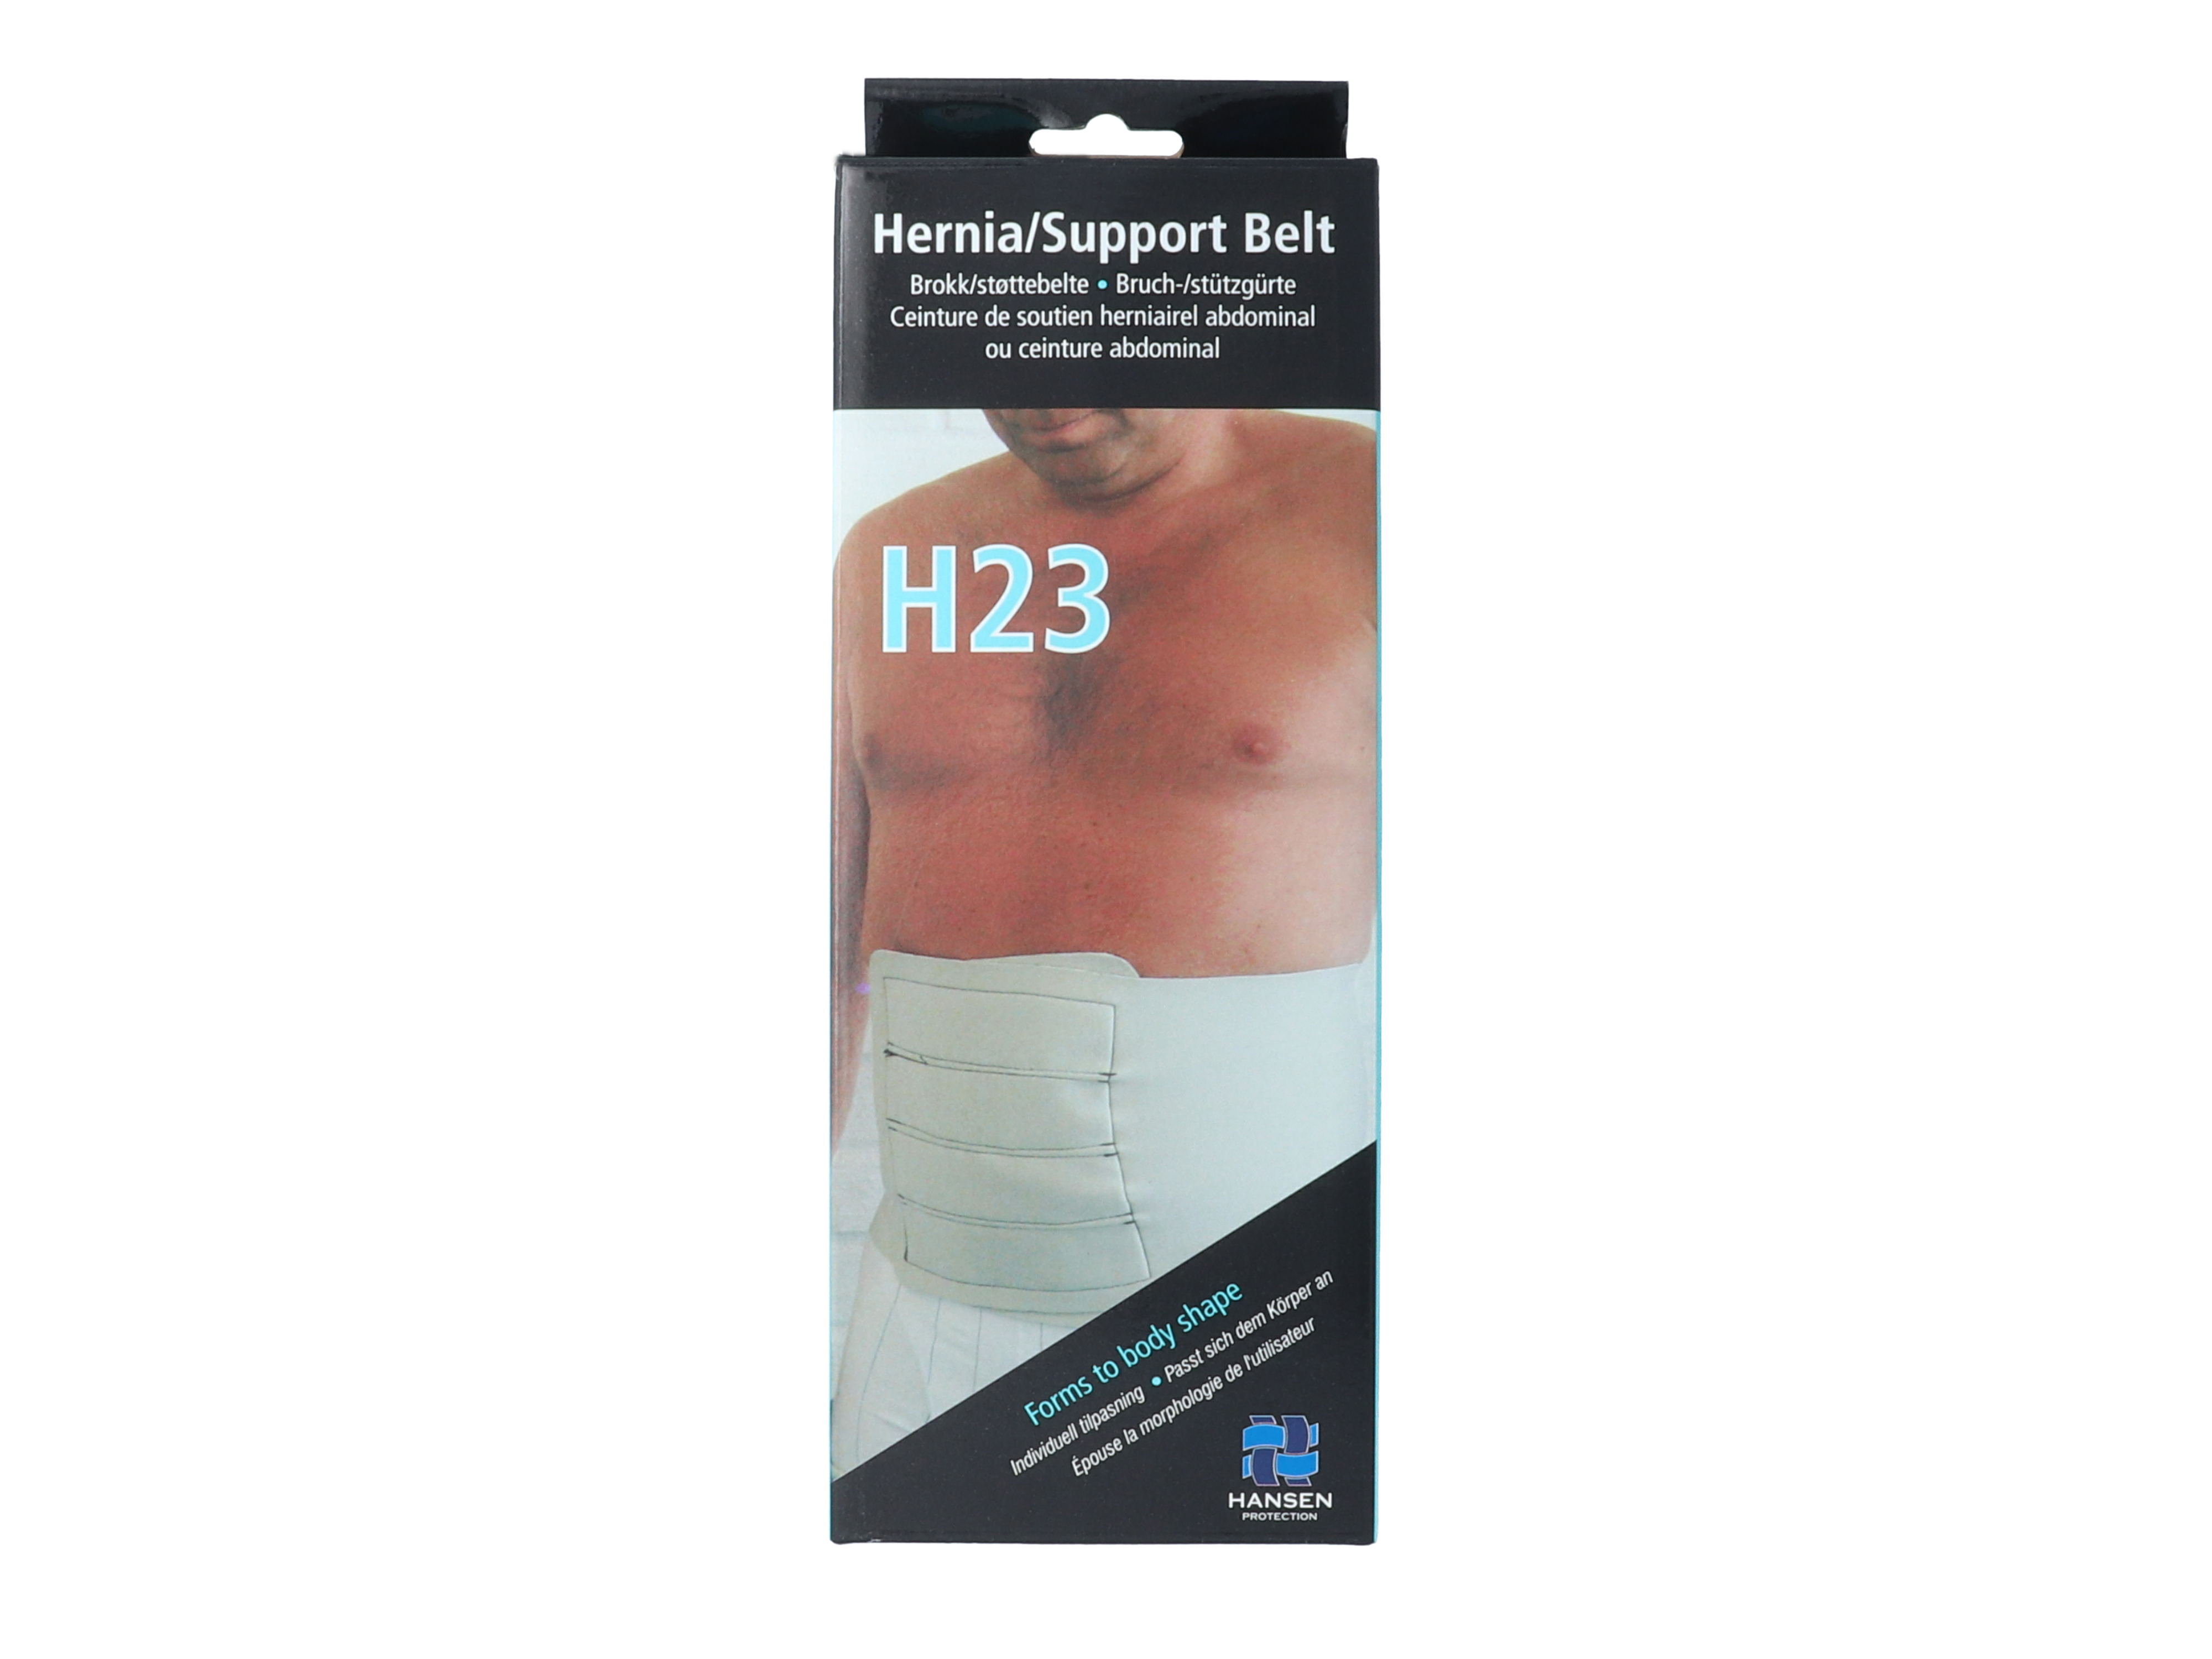 Hansen Protection HH Brokk/støttebelte H23, str XL, omkrets 110 cm, 1 stk.